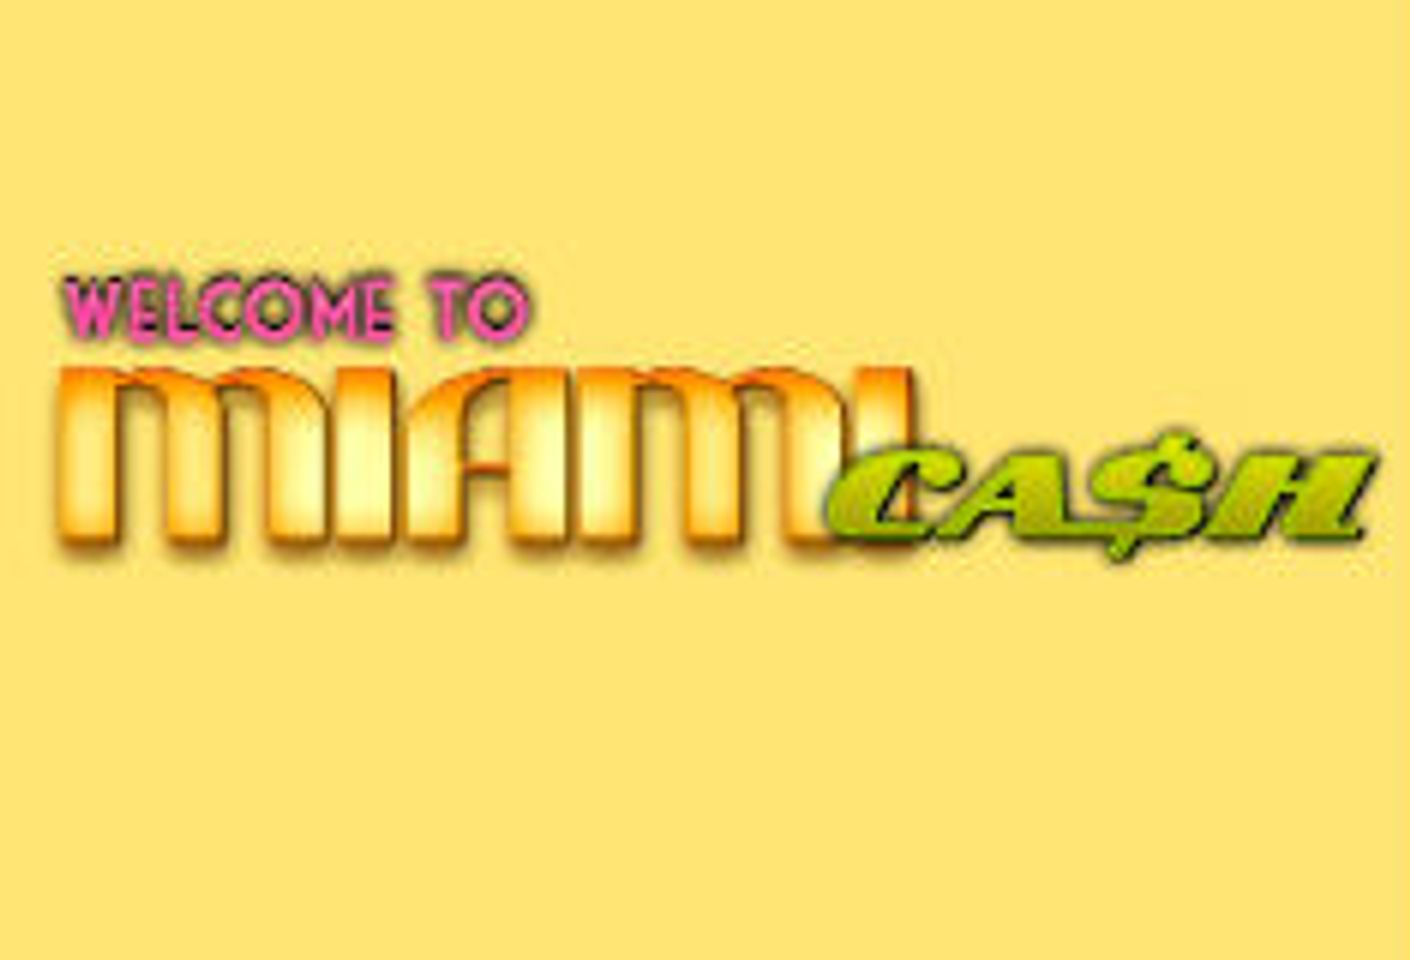 New Affiliate Program, MiamiCash, Launches